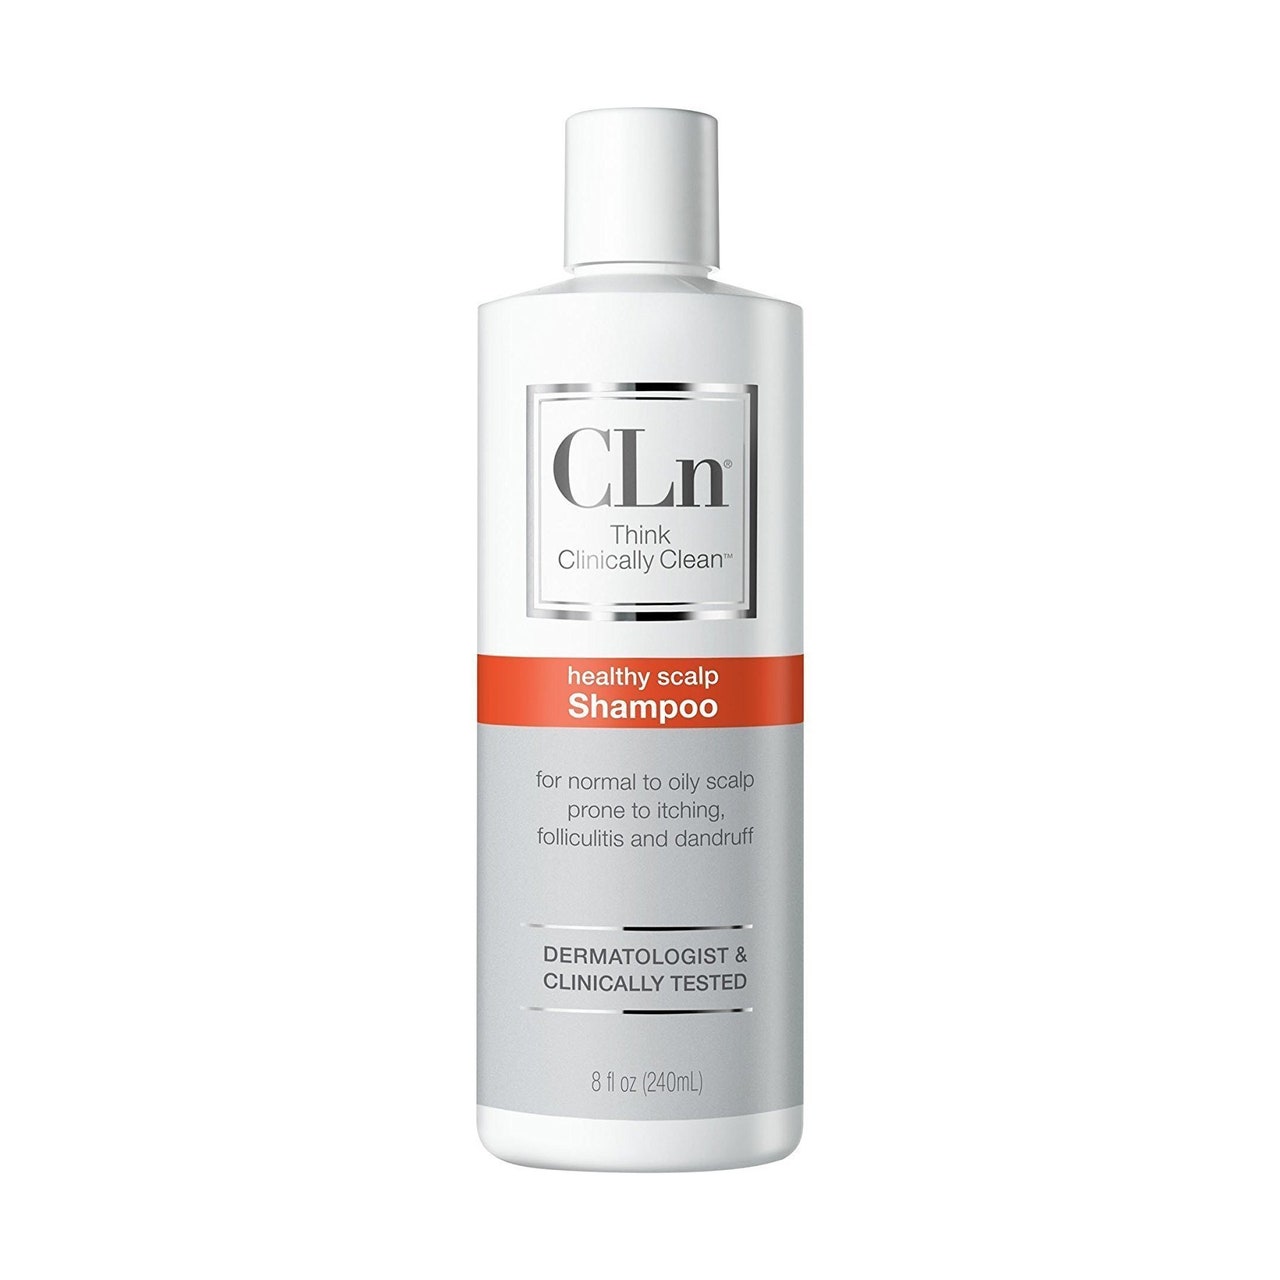 CLN-Hautpflege-Shampoo. Weiße und graue Flasche Schuppenshampoo auf weißem Hintergrund